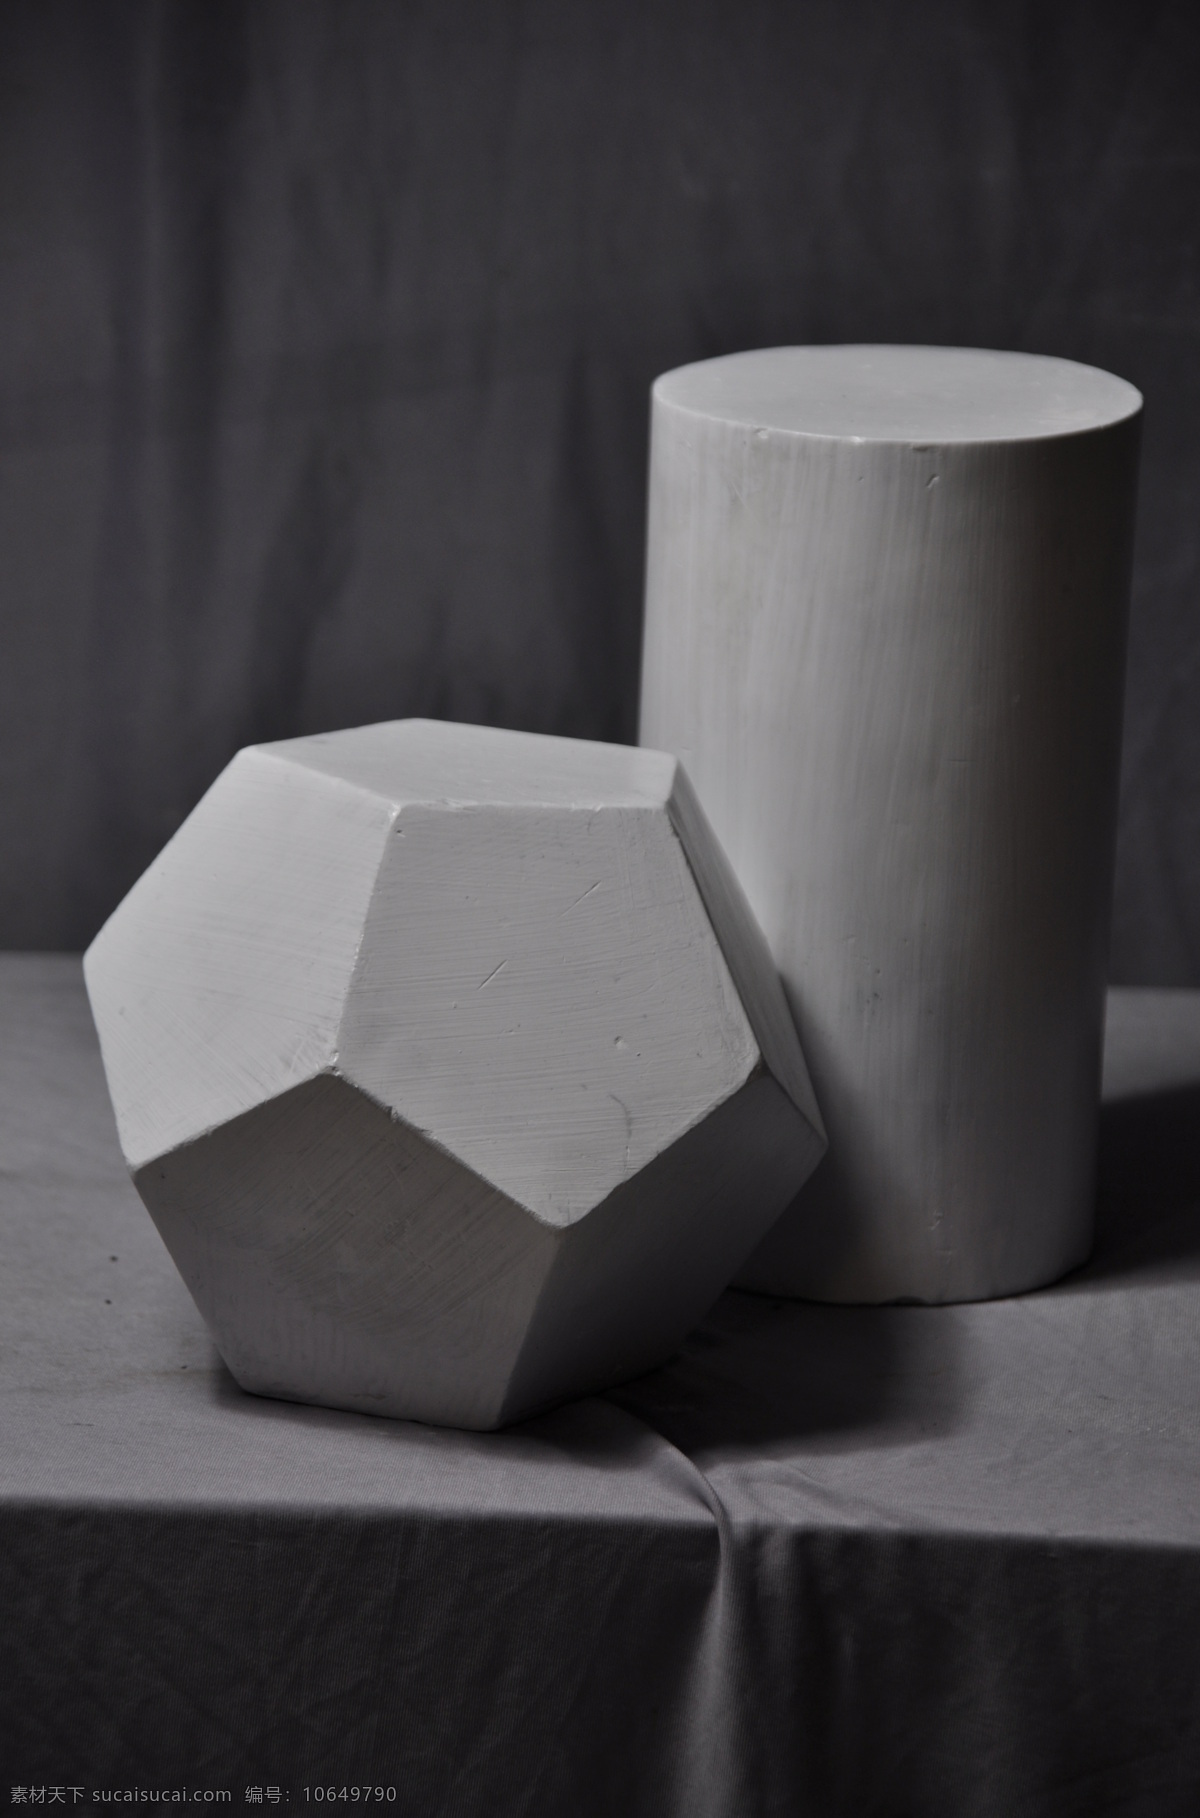 石膏 12面体 圆柱体 几何体 素描 绘画练习 黑白 美术教材 石膏几何体 文化艺术 美术绘画